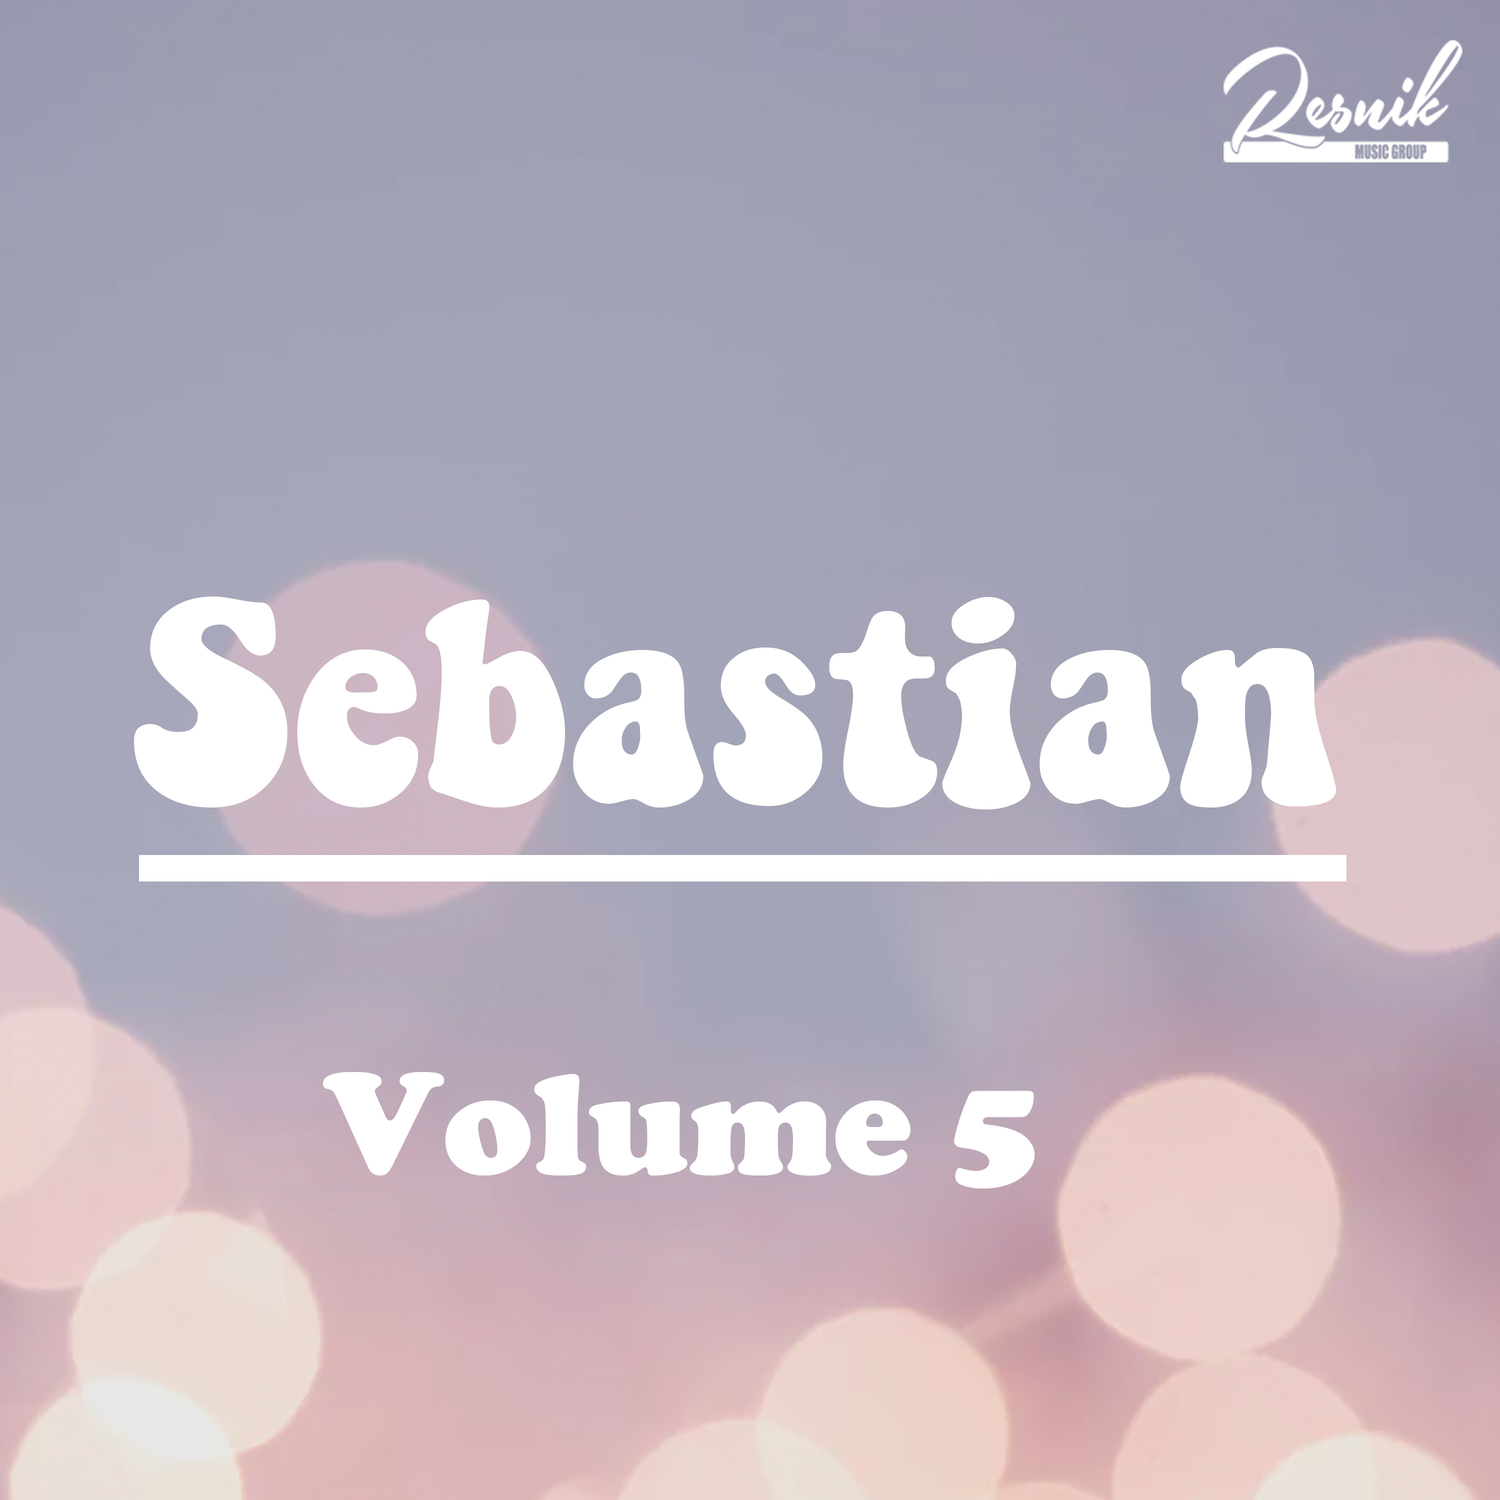 Sebastian Vol. 5